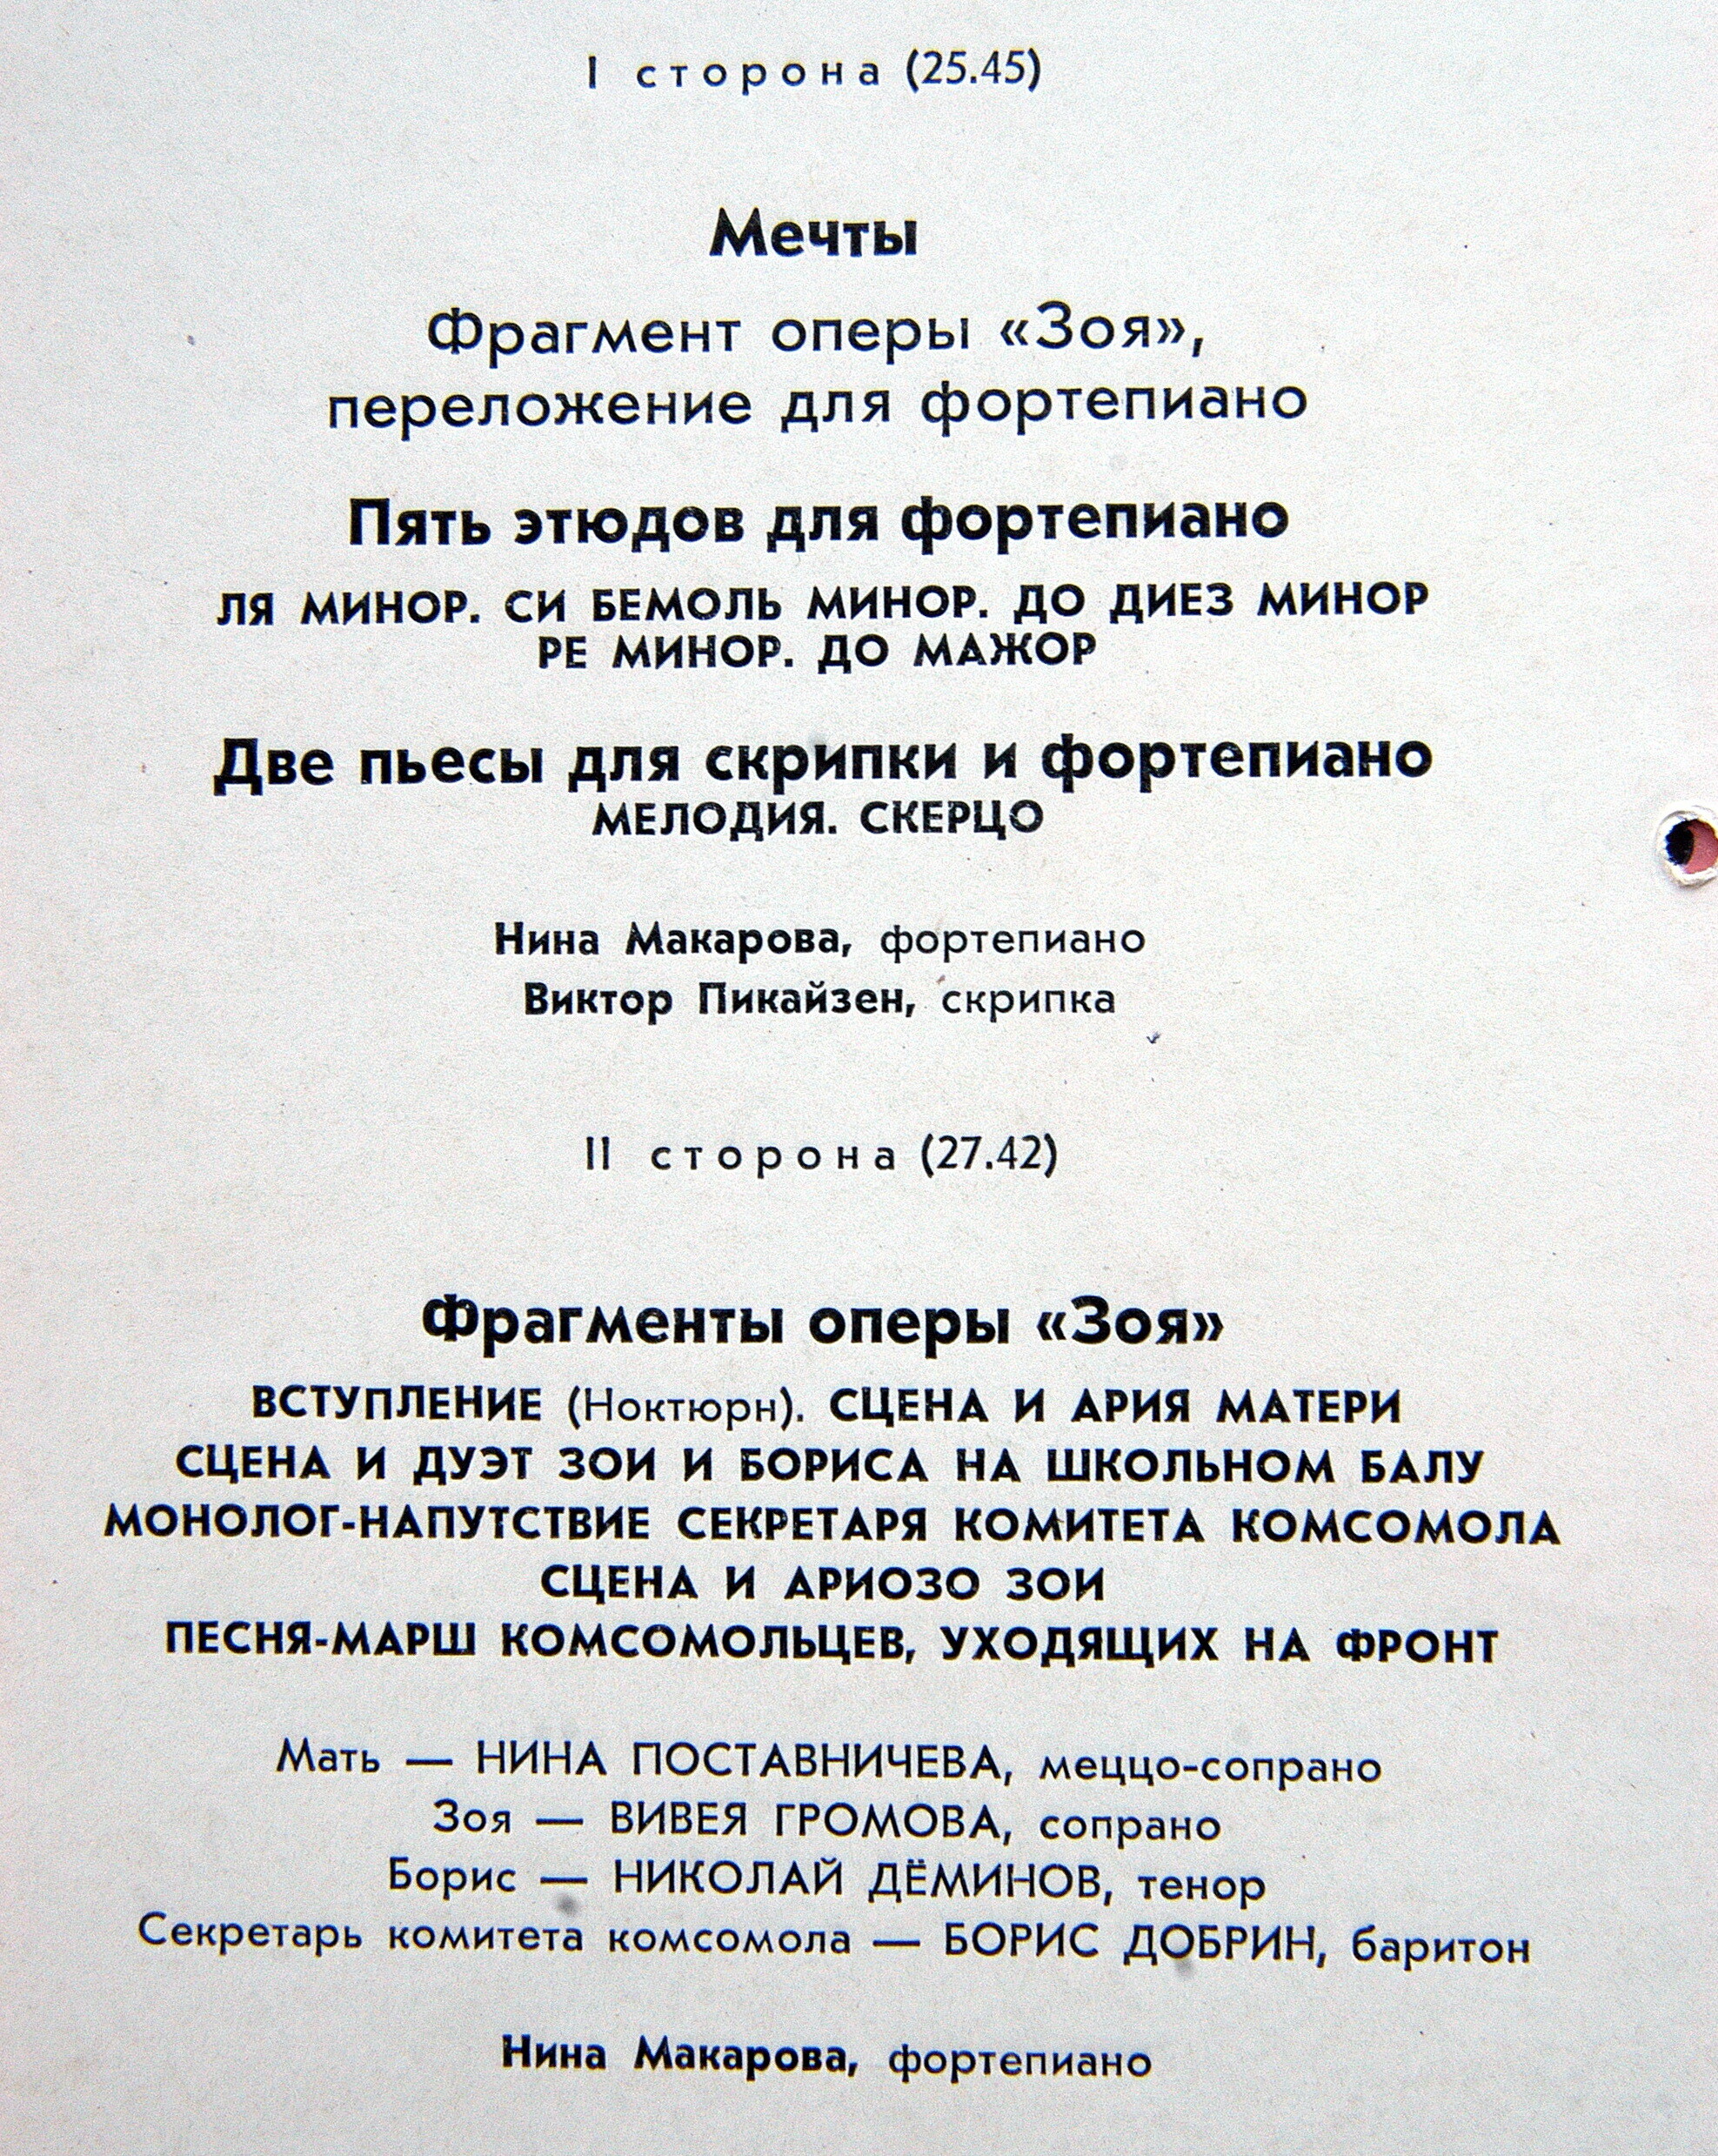 Нина МАКАРОВА. Авторский концерт 20 октября 1968 г. Малый зал Московской консерватории